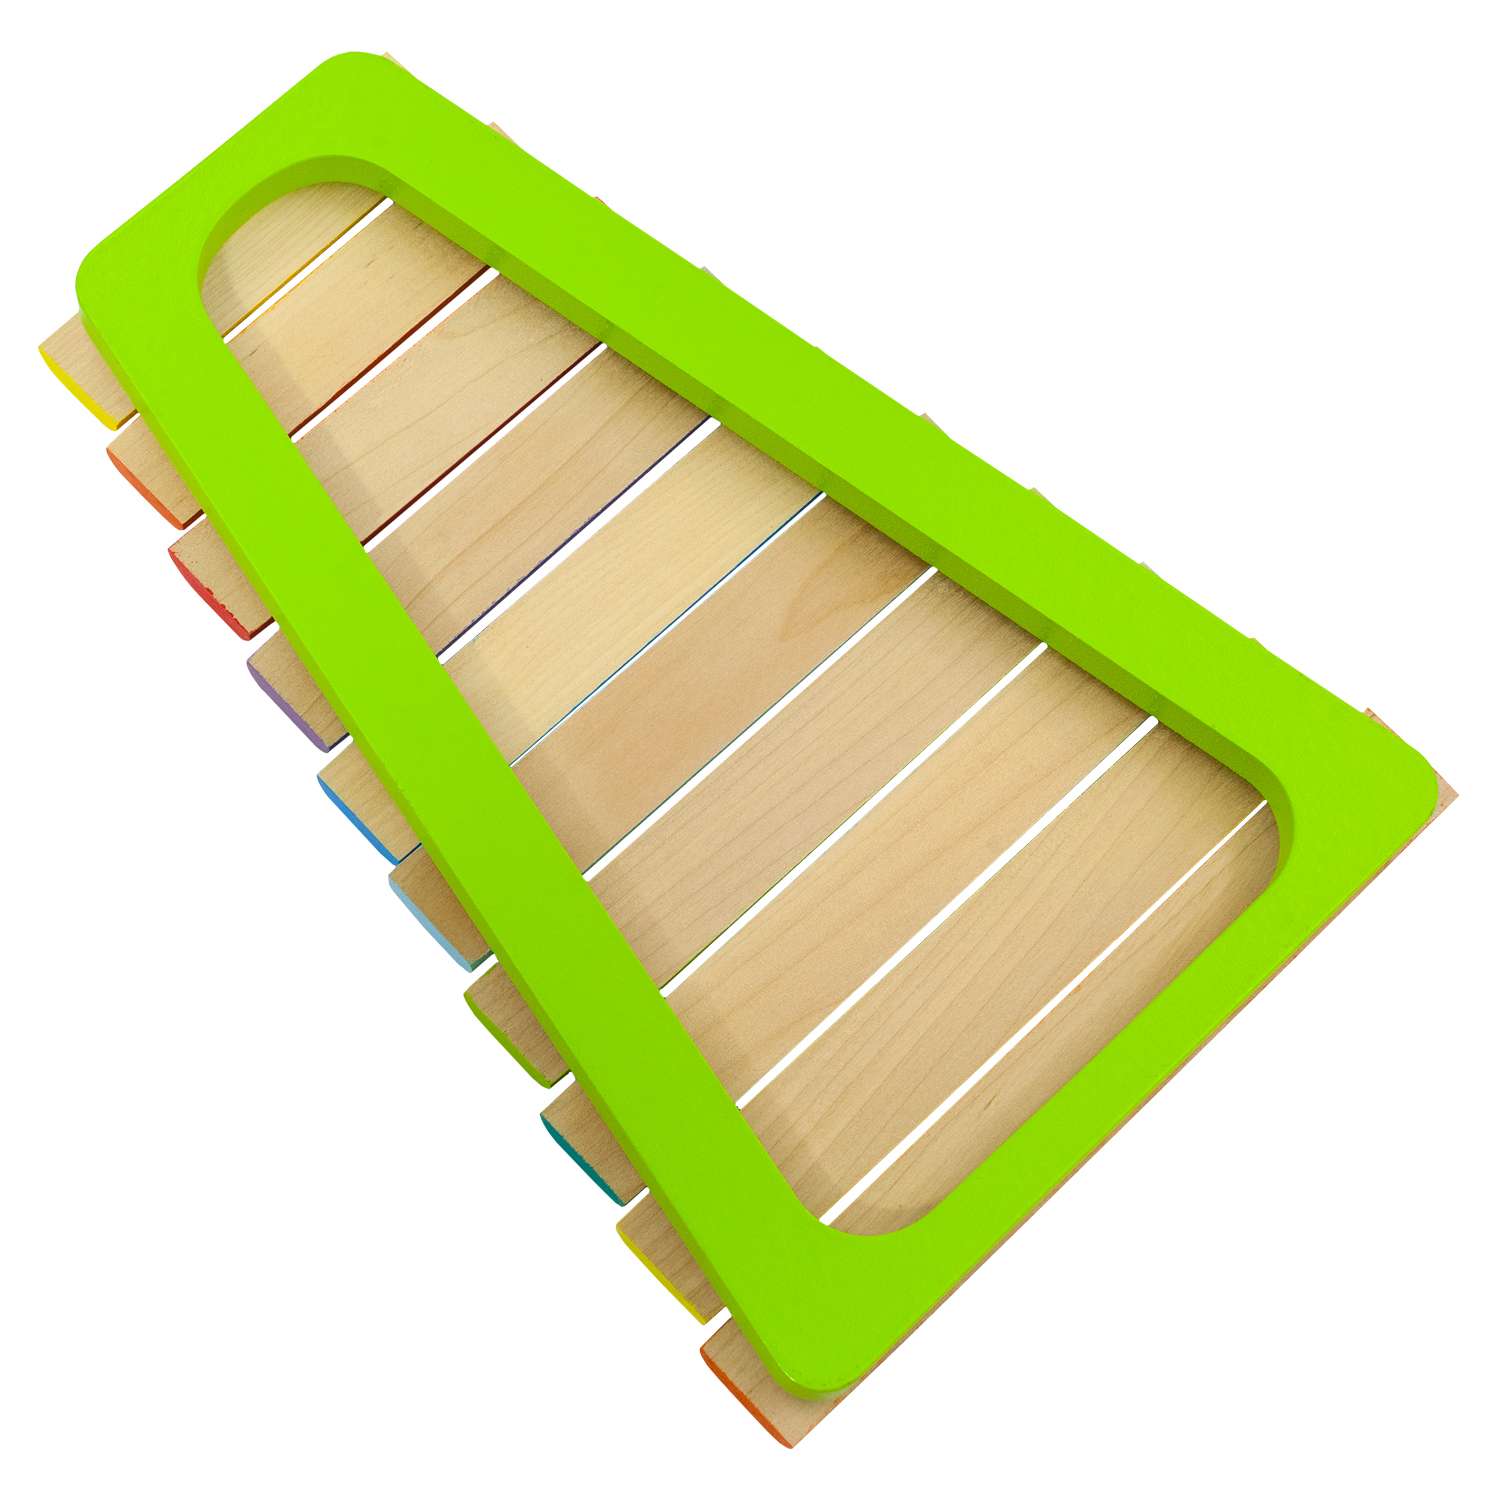 Ксилофон цветные ступеньки Alatoys 10 планок + гайд с играми - фото 14